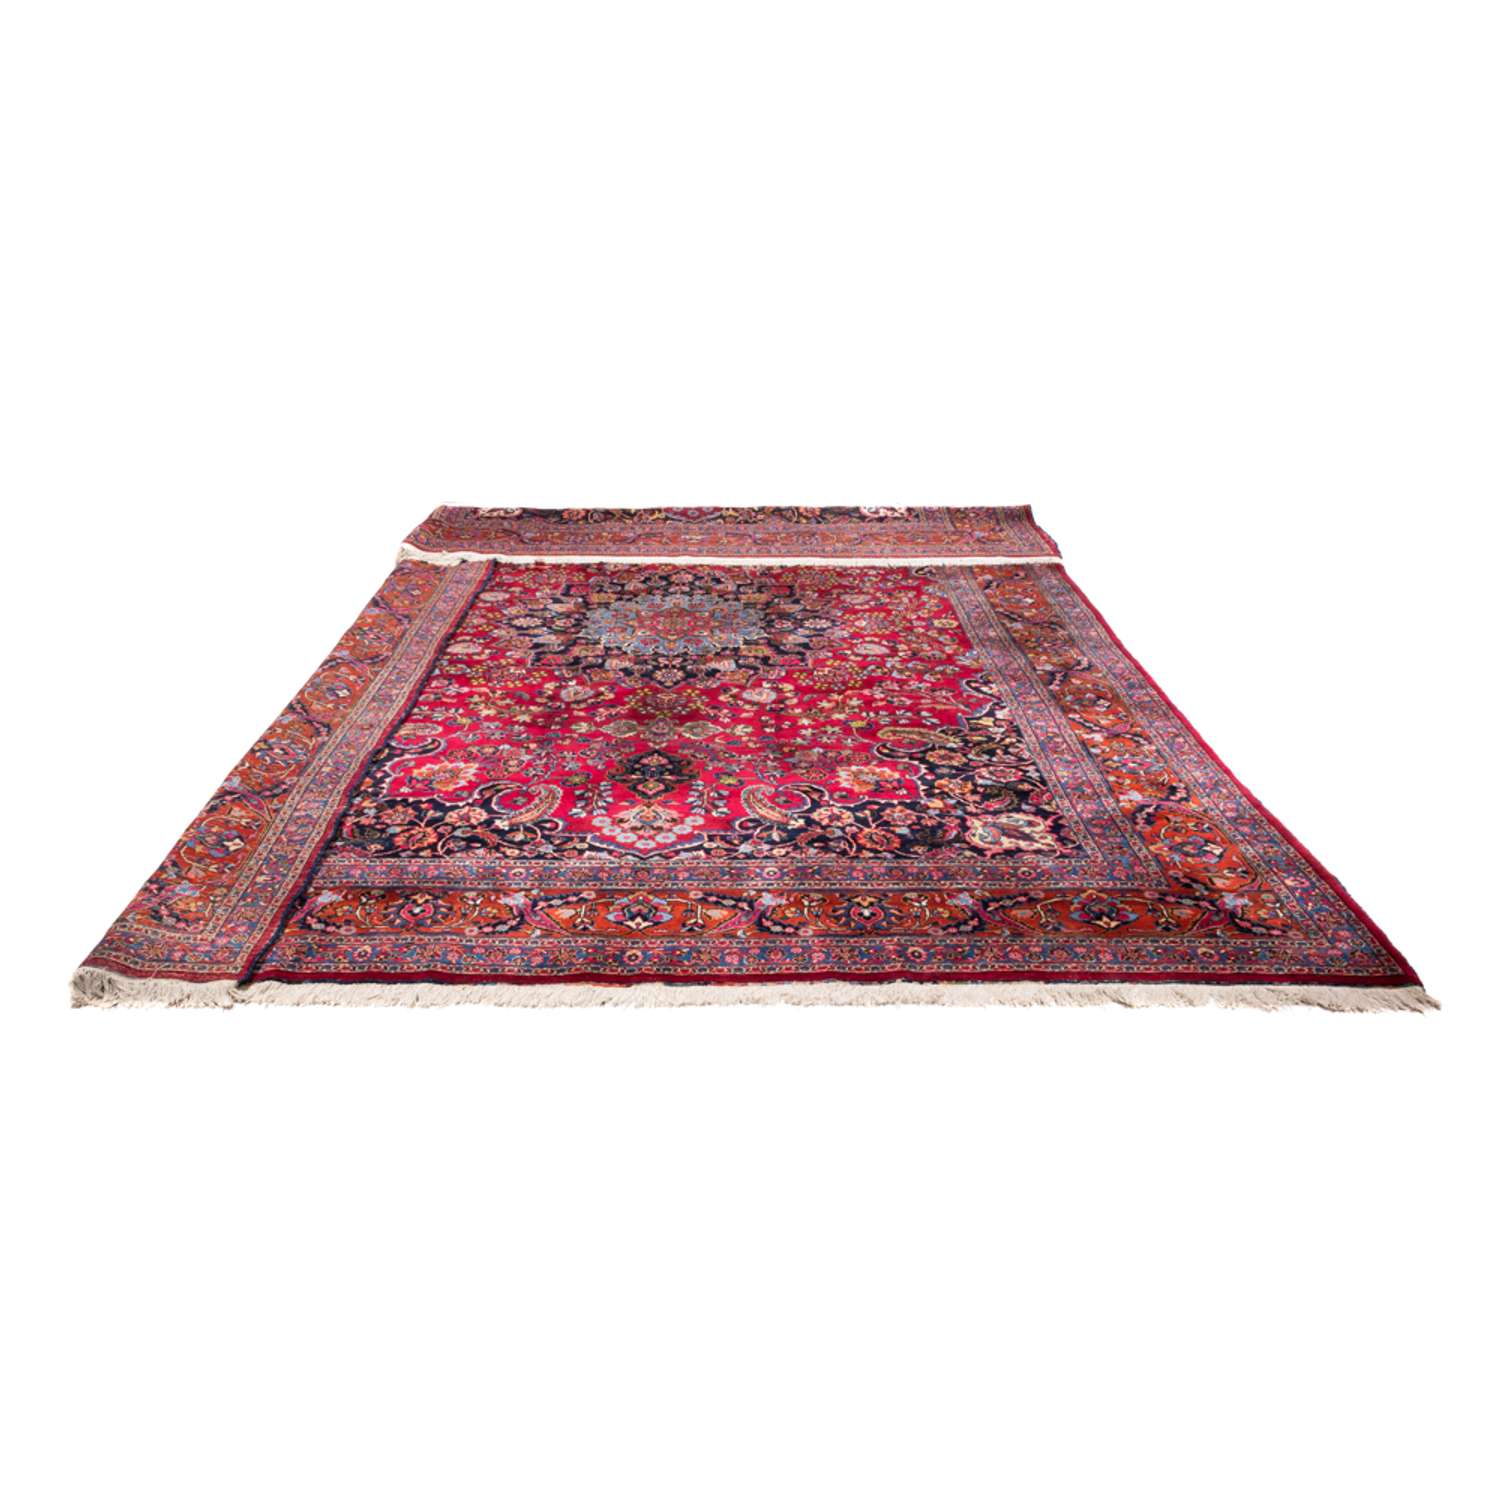 Persisk teppe - klassisk - 491 x 357 cm - rød